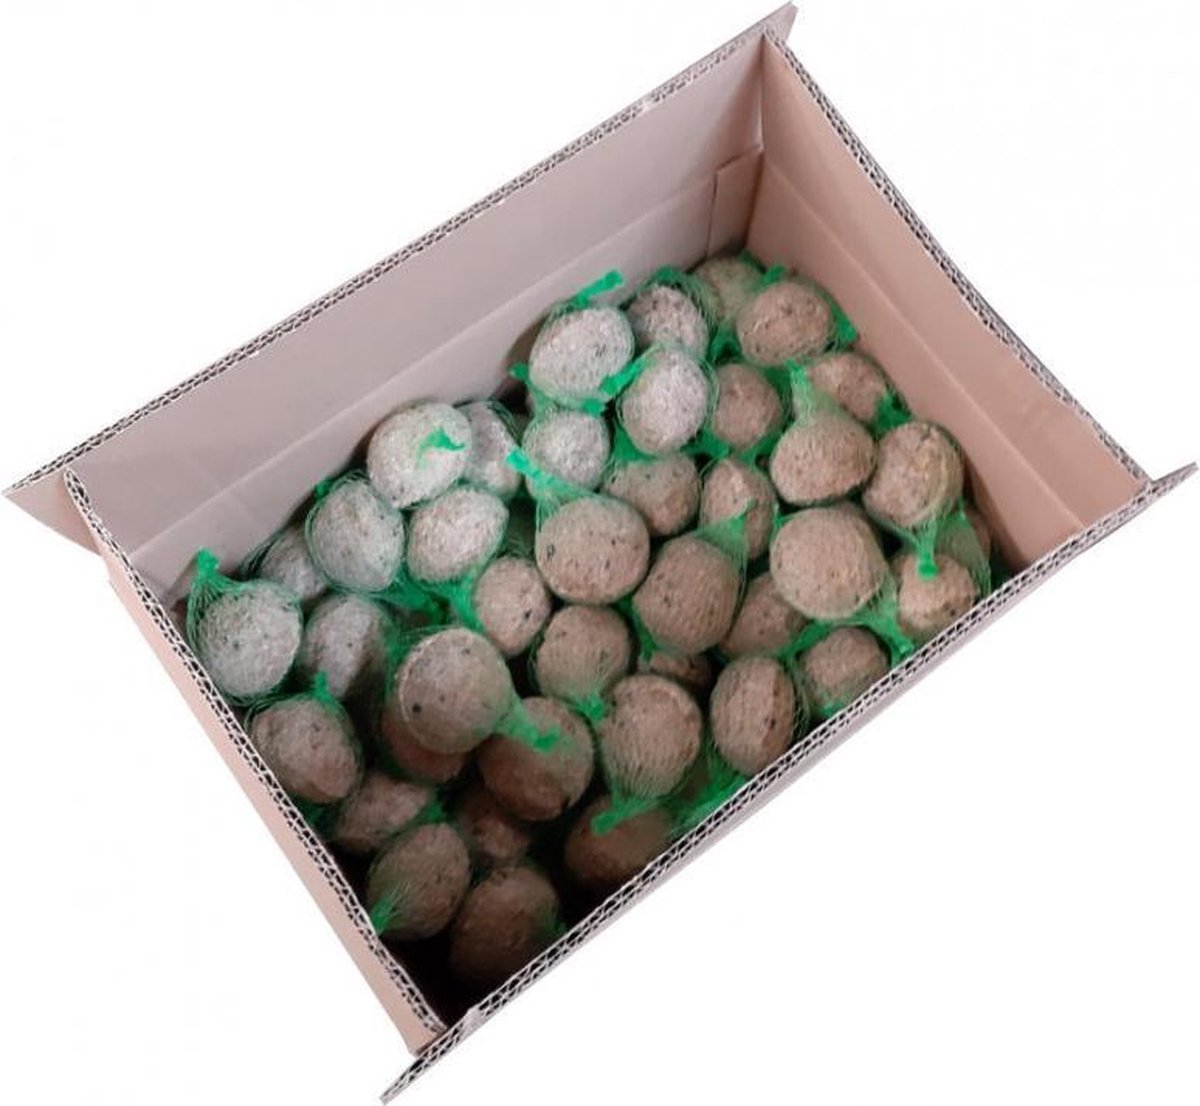 Mezenbollen vetbol doos van 120 stuks - met groen netje - Duponzoo